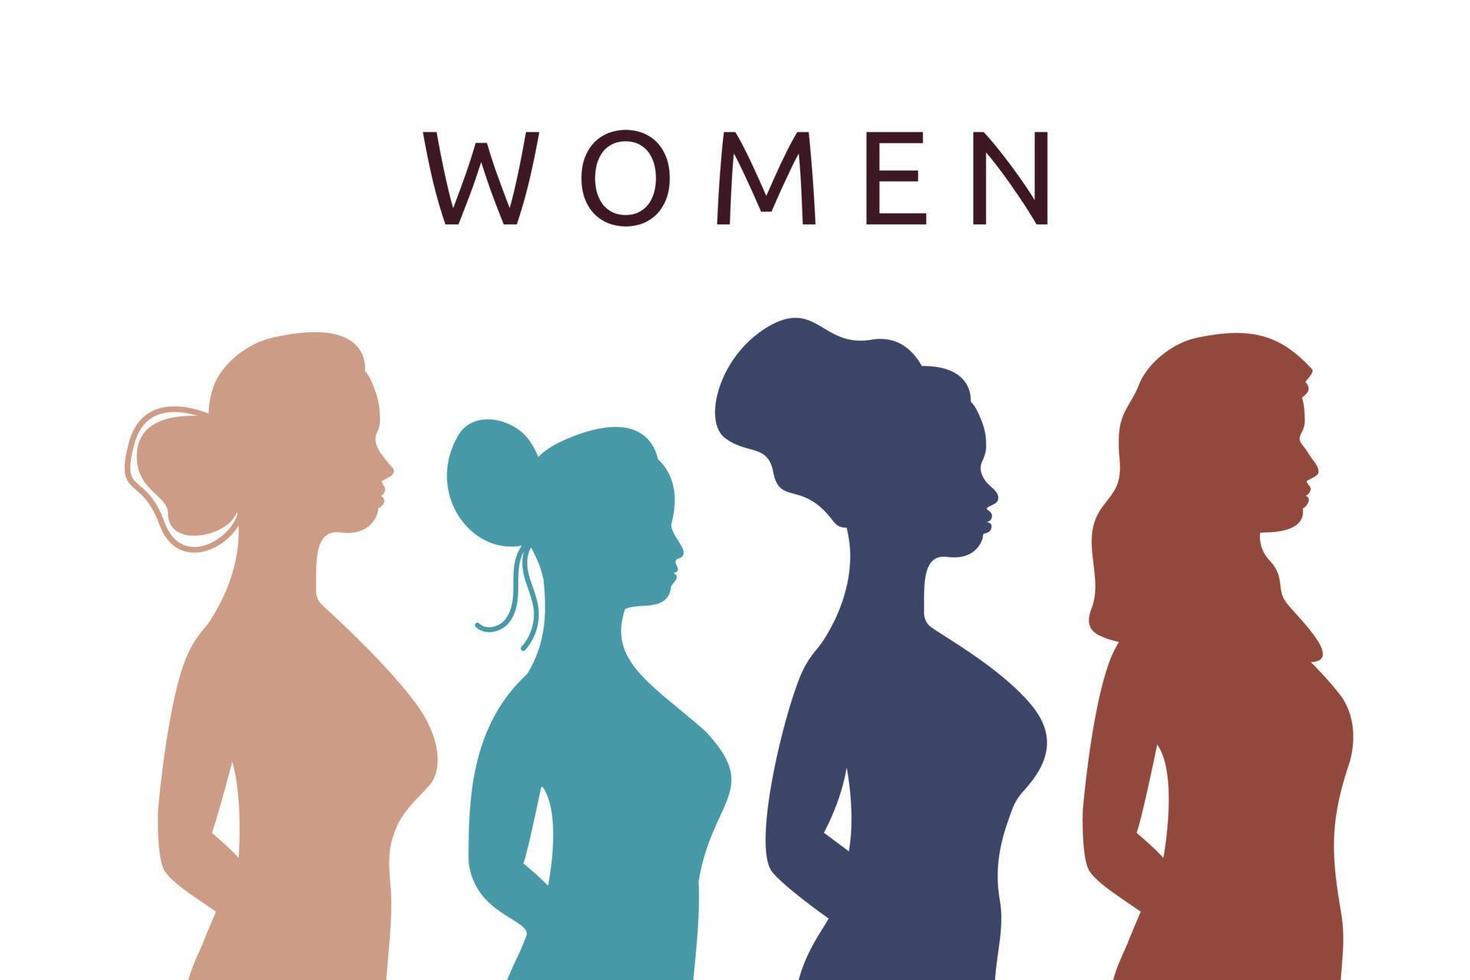 vrouwelijke silhouetten in profiel. groep vrouwen van verschillende etniciteiten en culturen samen. vrouwen tekst. platte vectorillustratie vector